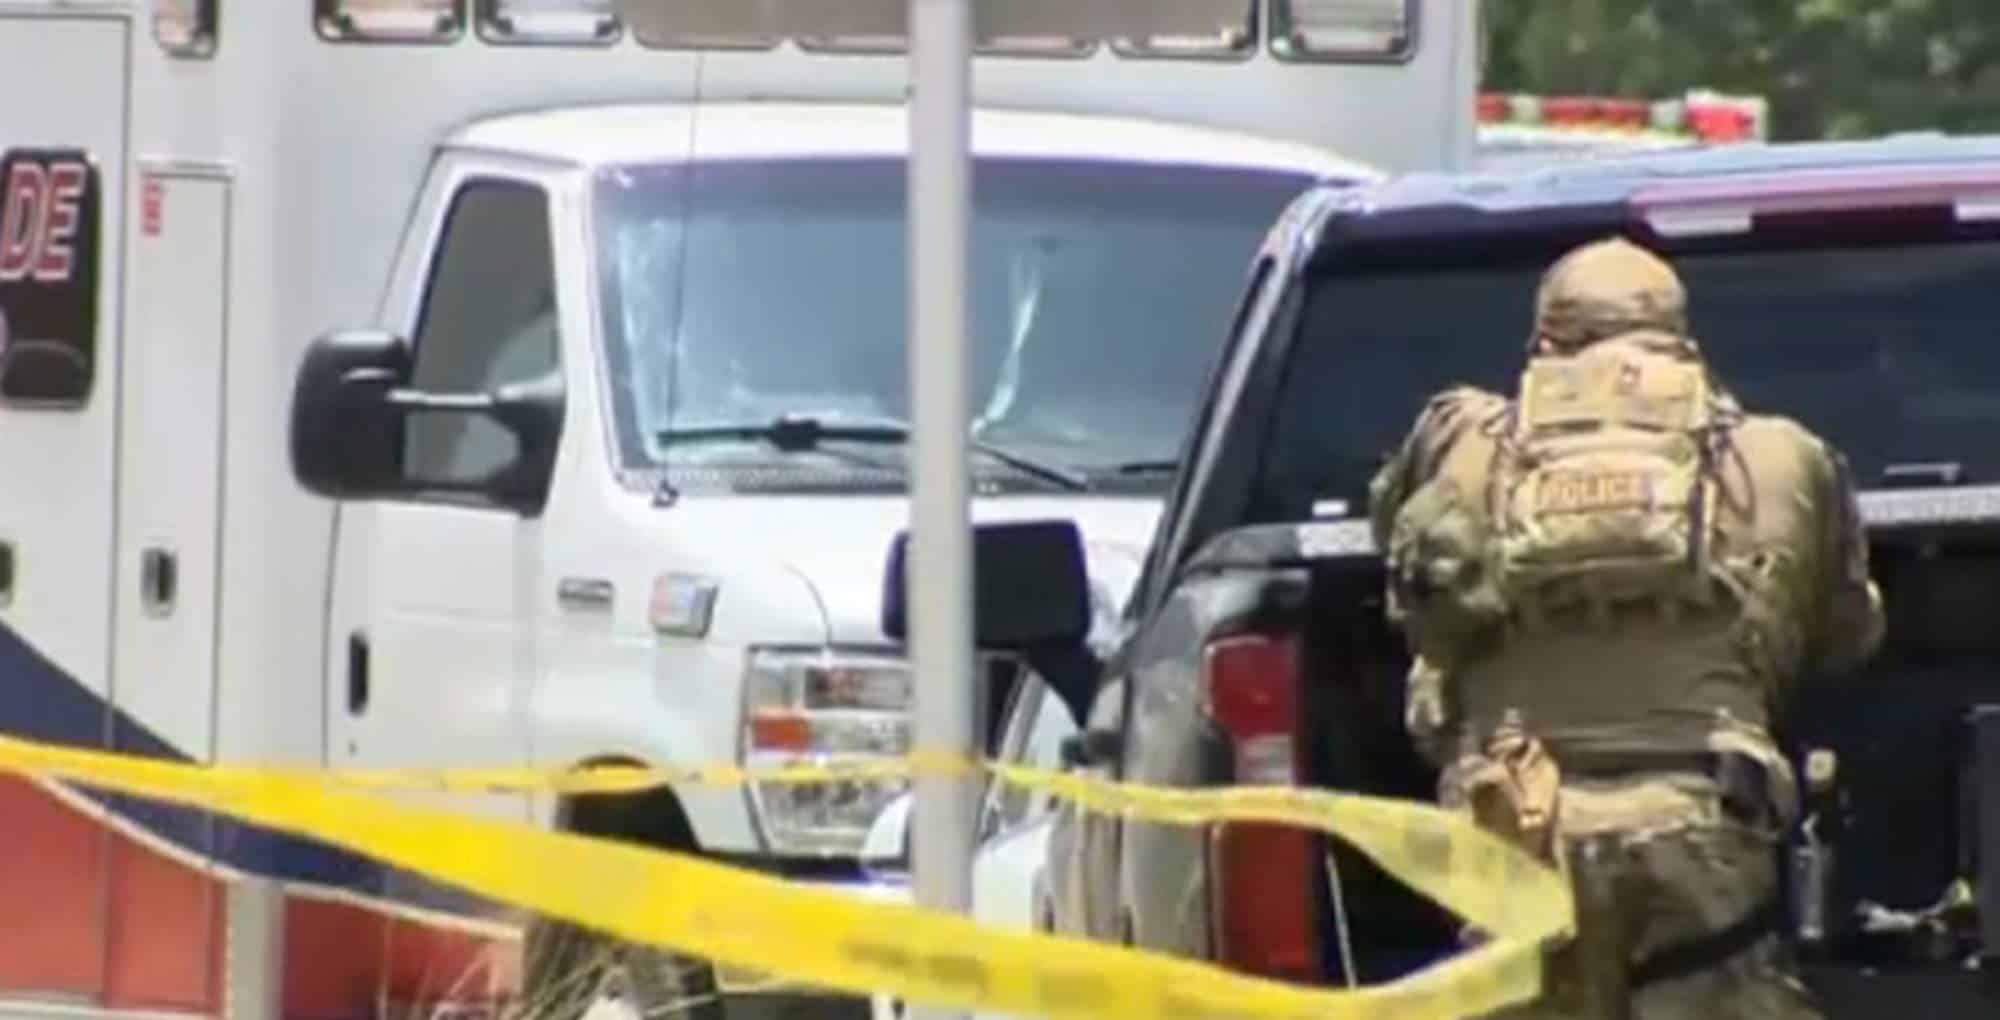 Εικόνα από την πόλη Γιουβέιλντ στο Τέξας όπου έλαβαν χώρα οι πυροβολισμοί σε σχολείο